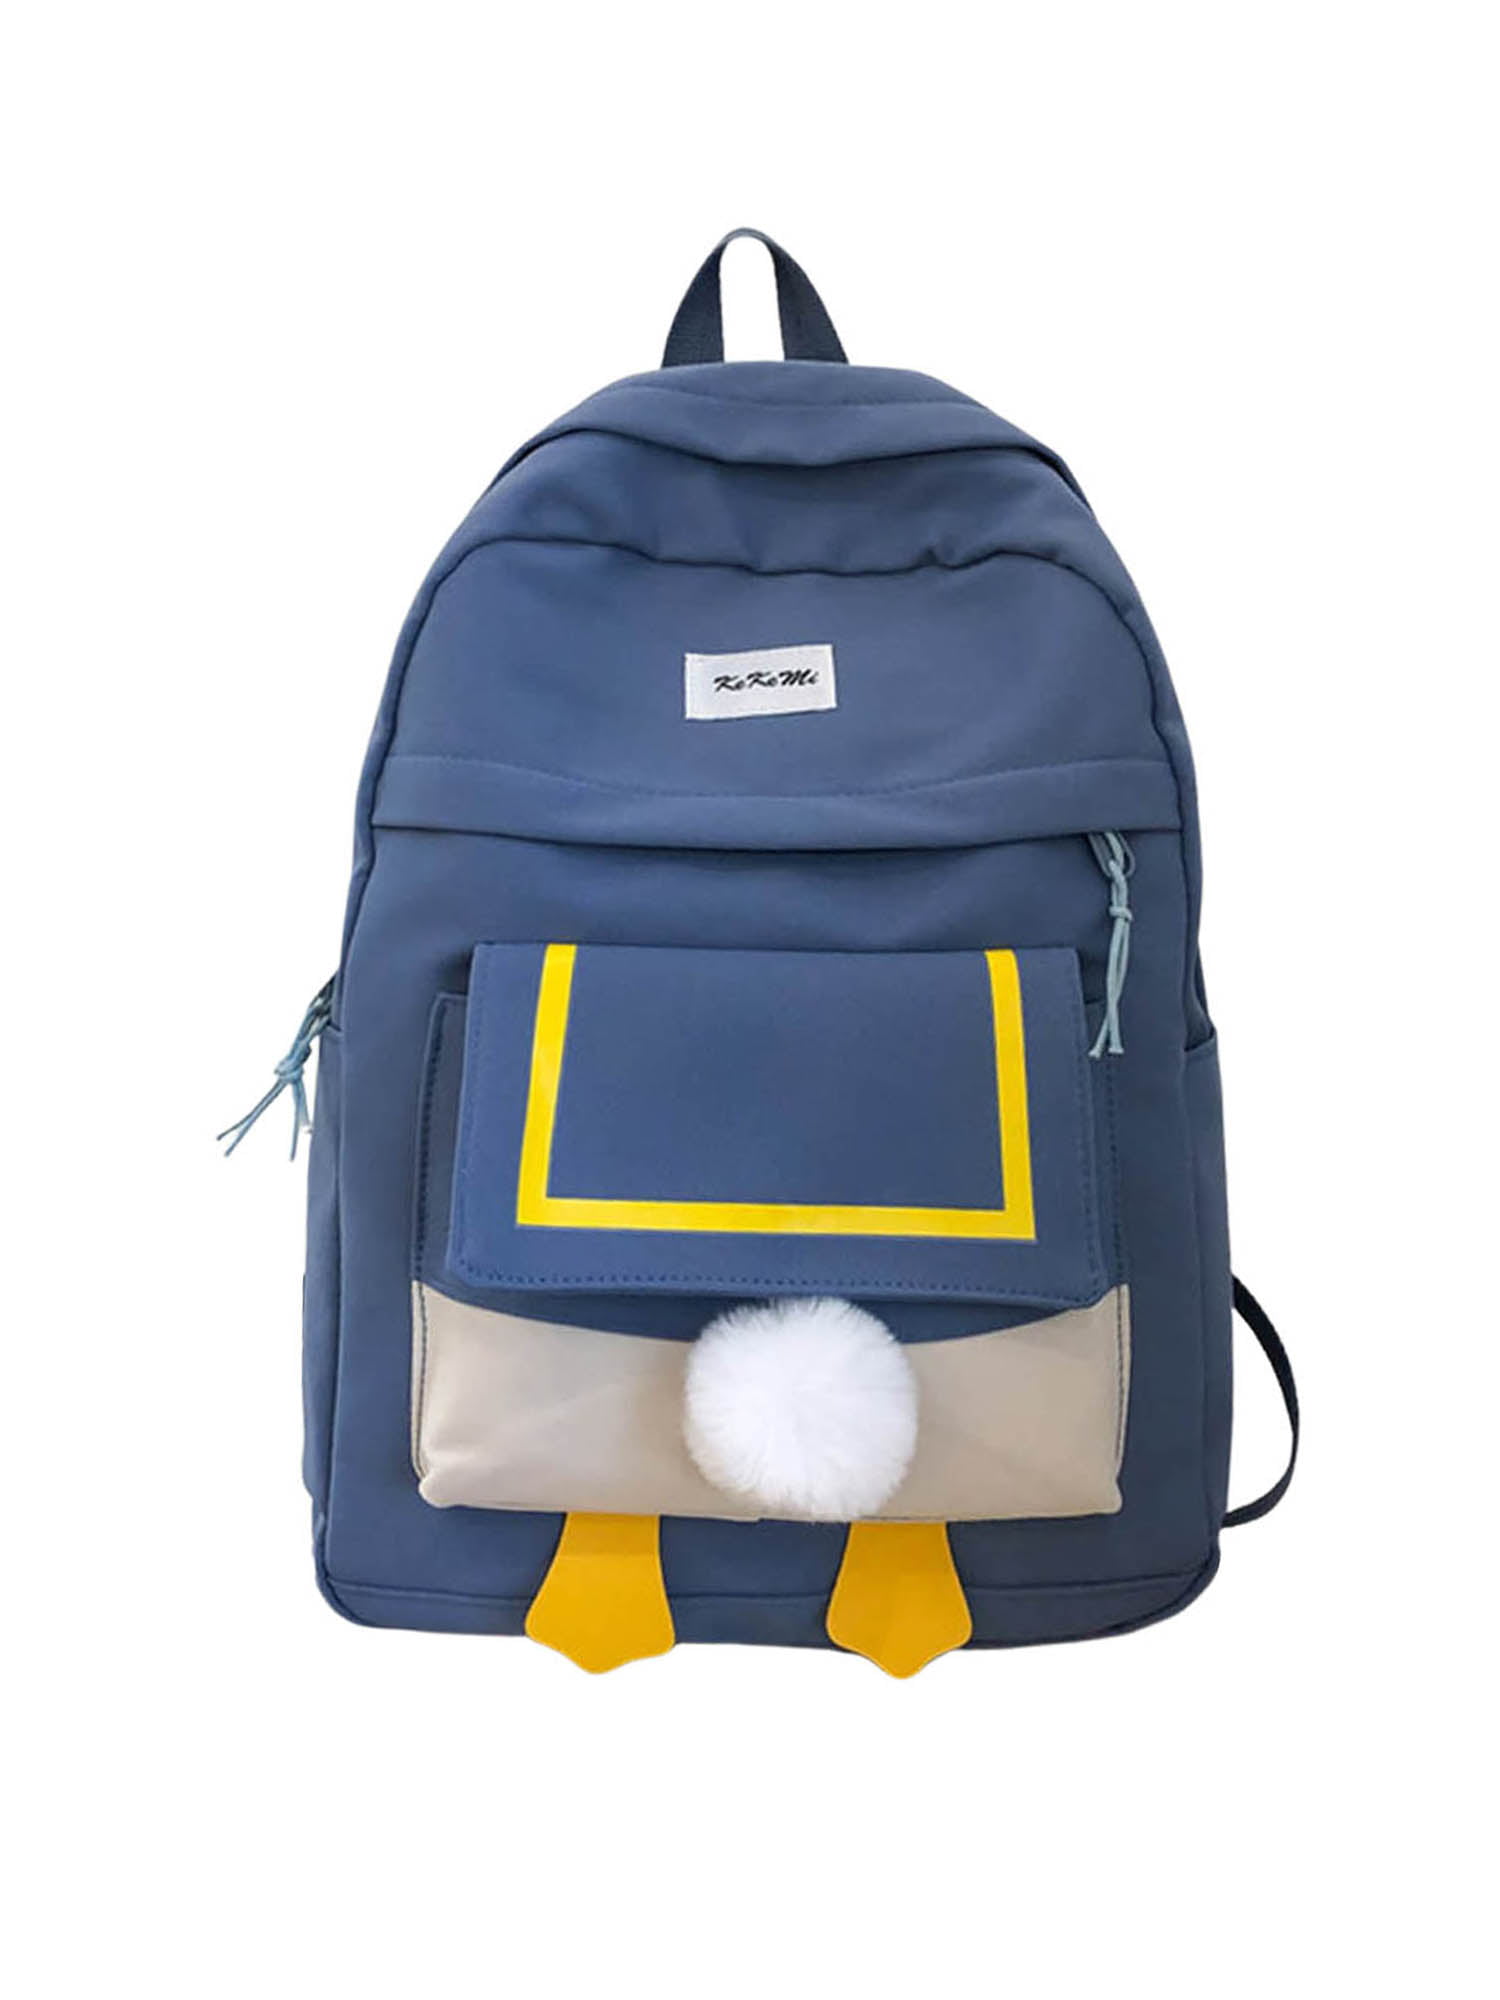 Unisex School Backpack,Golden Stars Gold Sparkle Casual Lightweight Travel Daypack Durable College Bookbag Laptop Bag Shoulder Bag